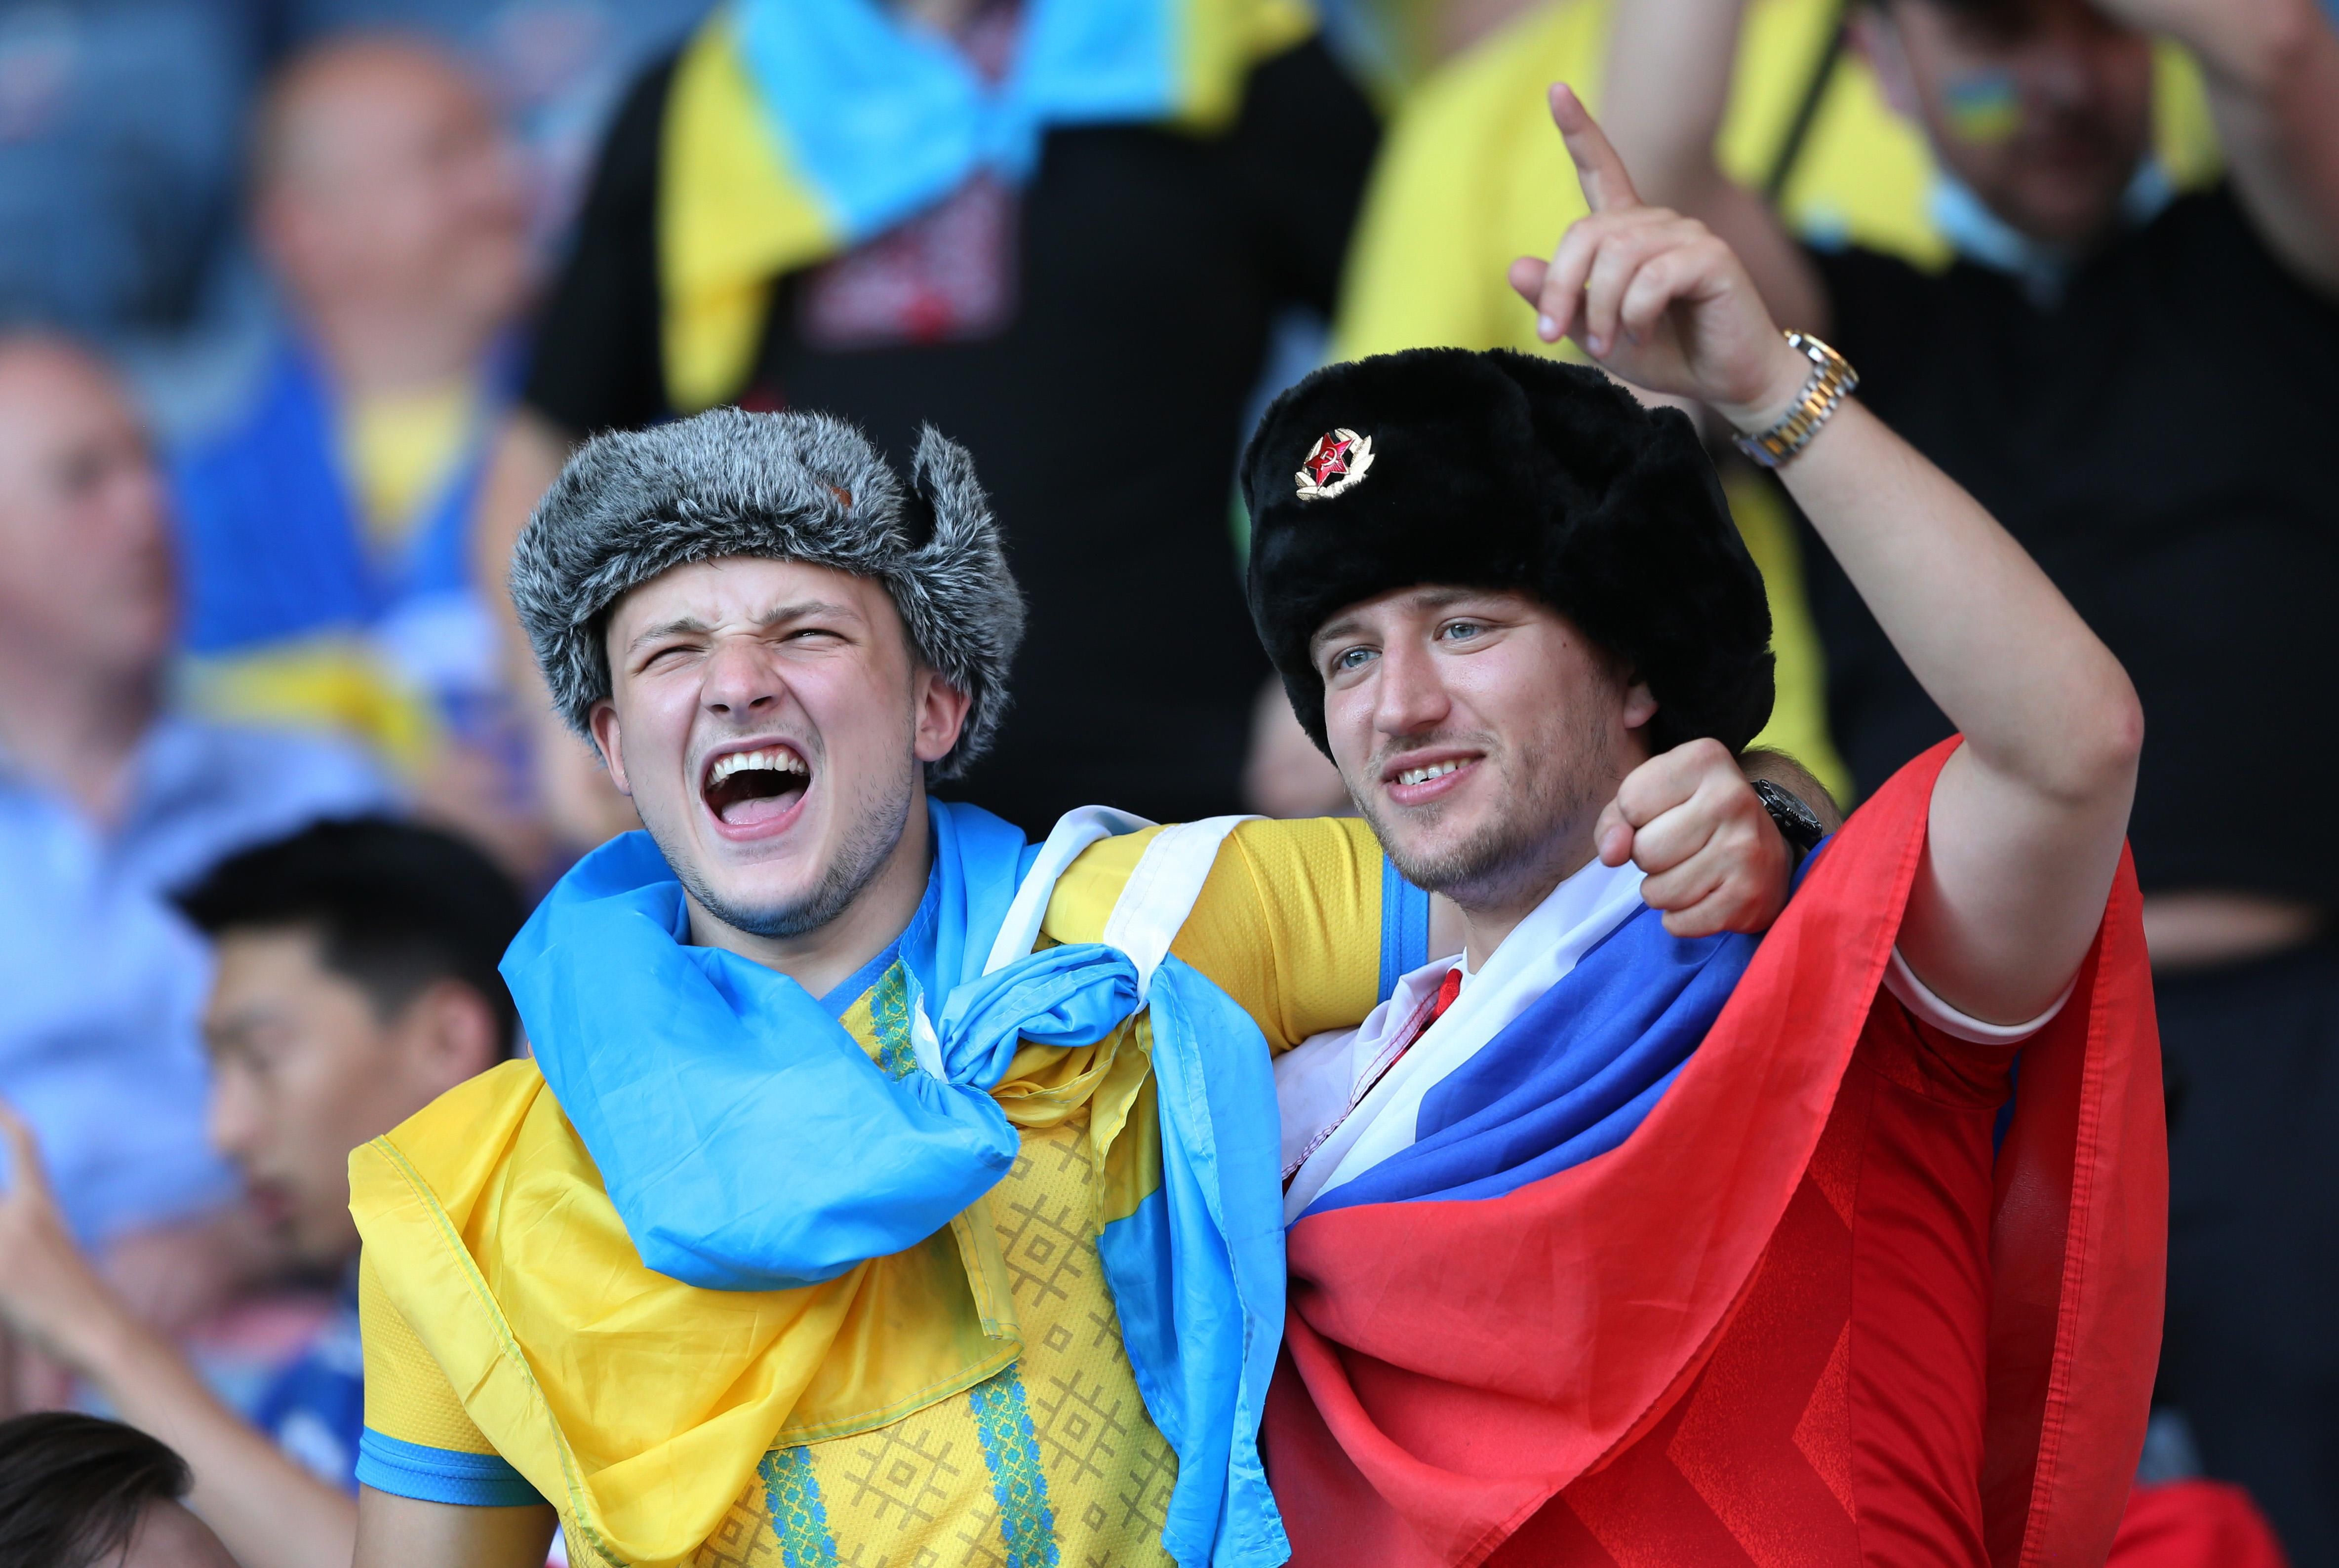 Российский фанат с триколором появился на трибуне Украины - фото